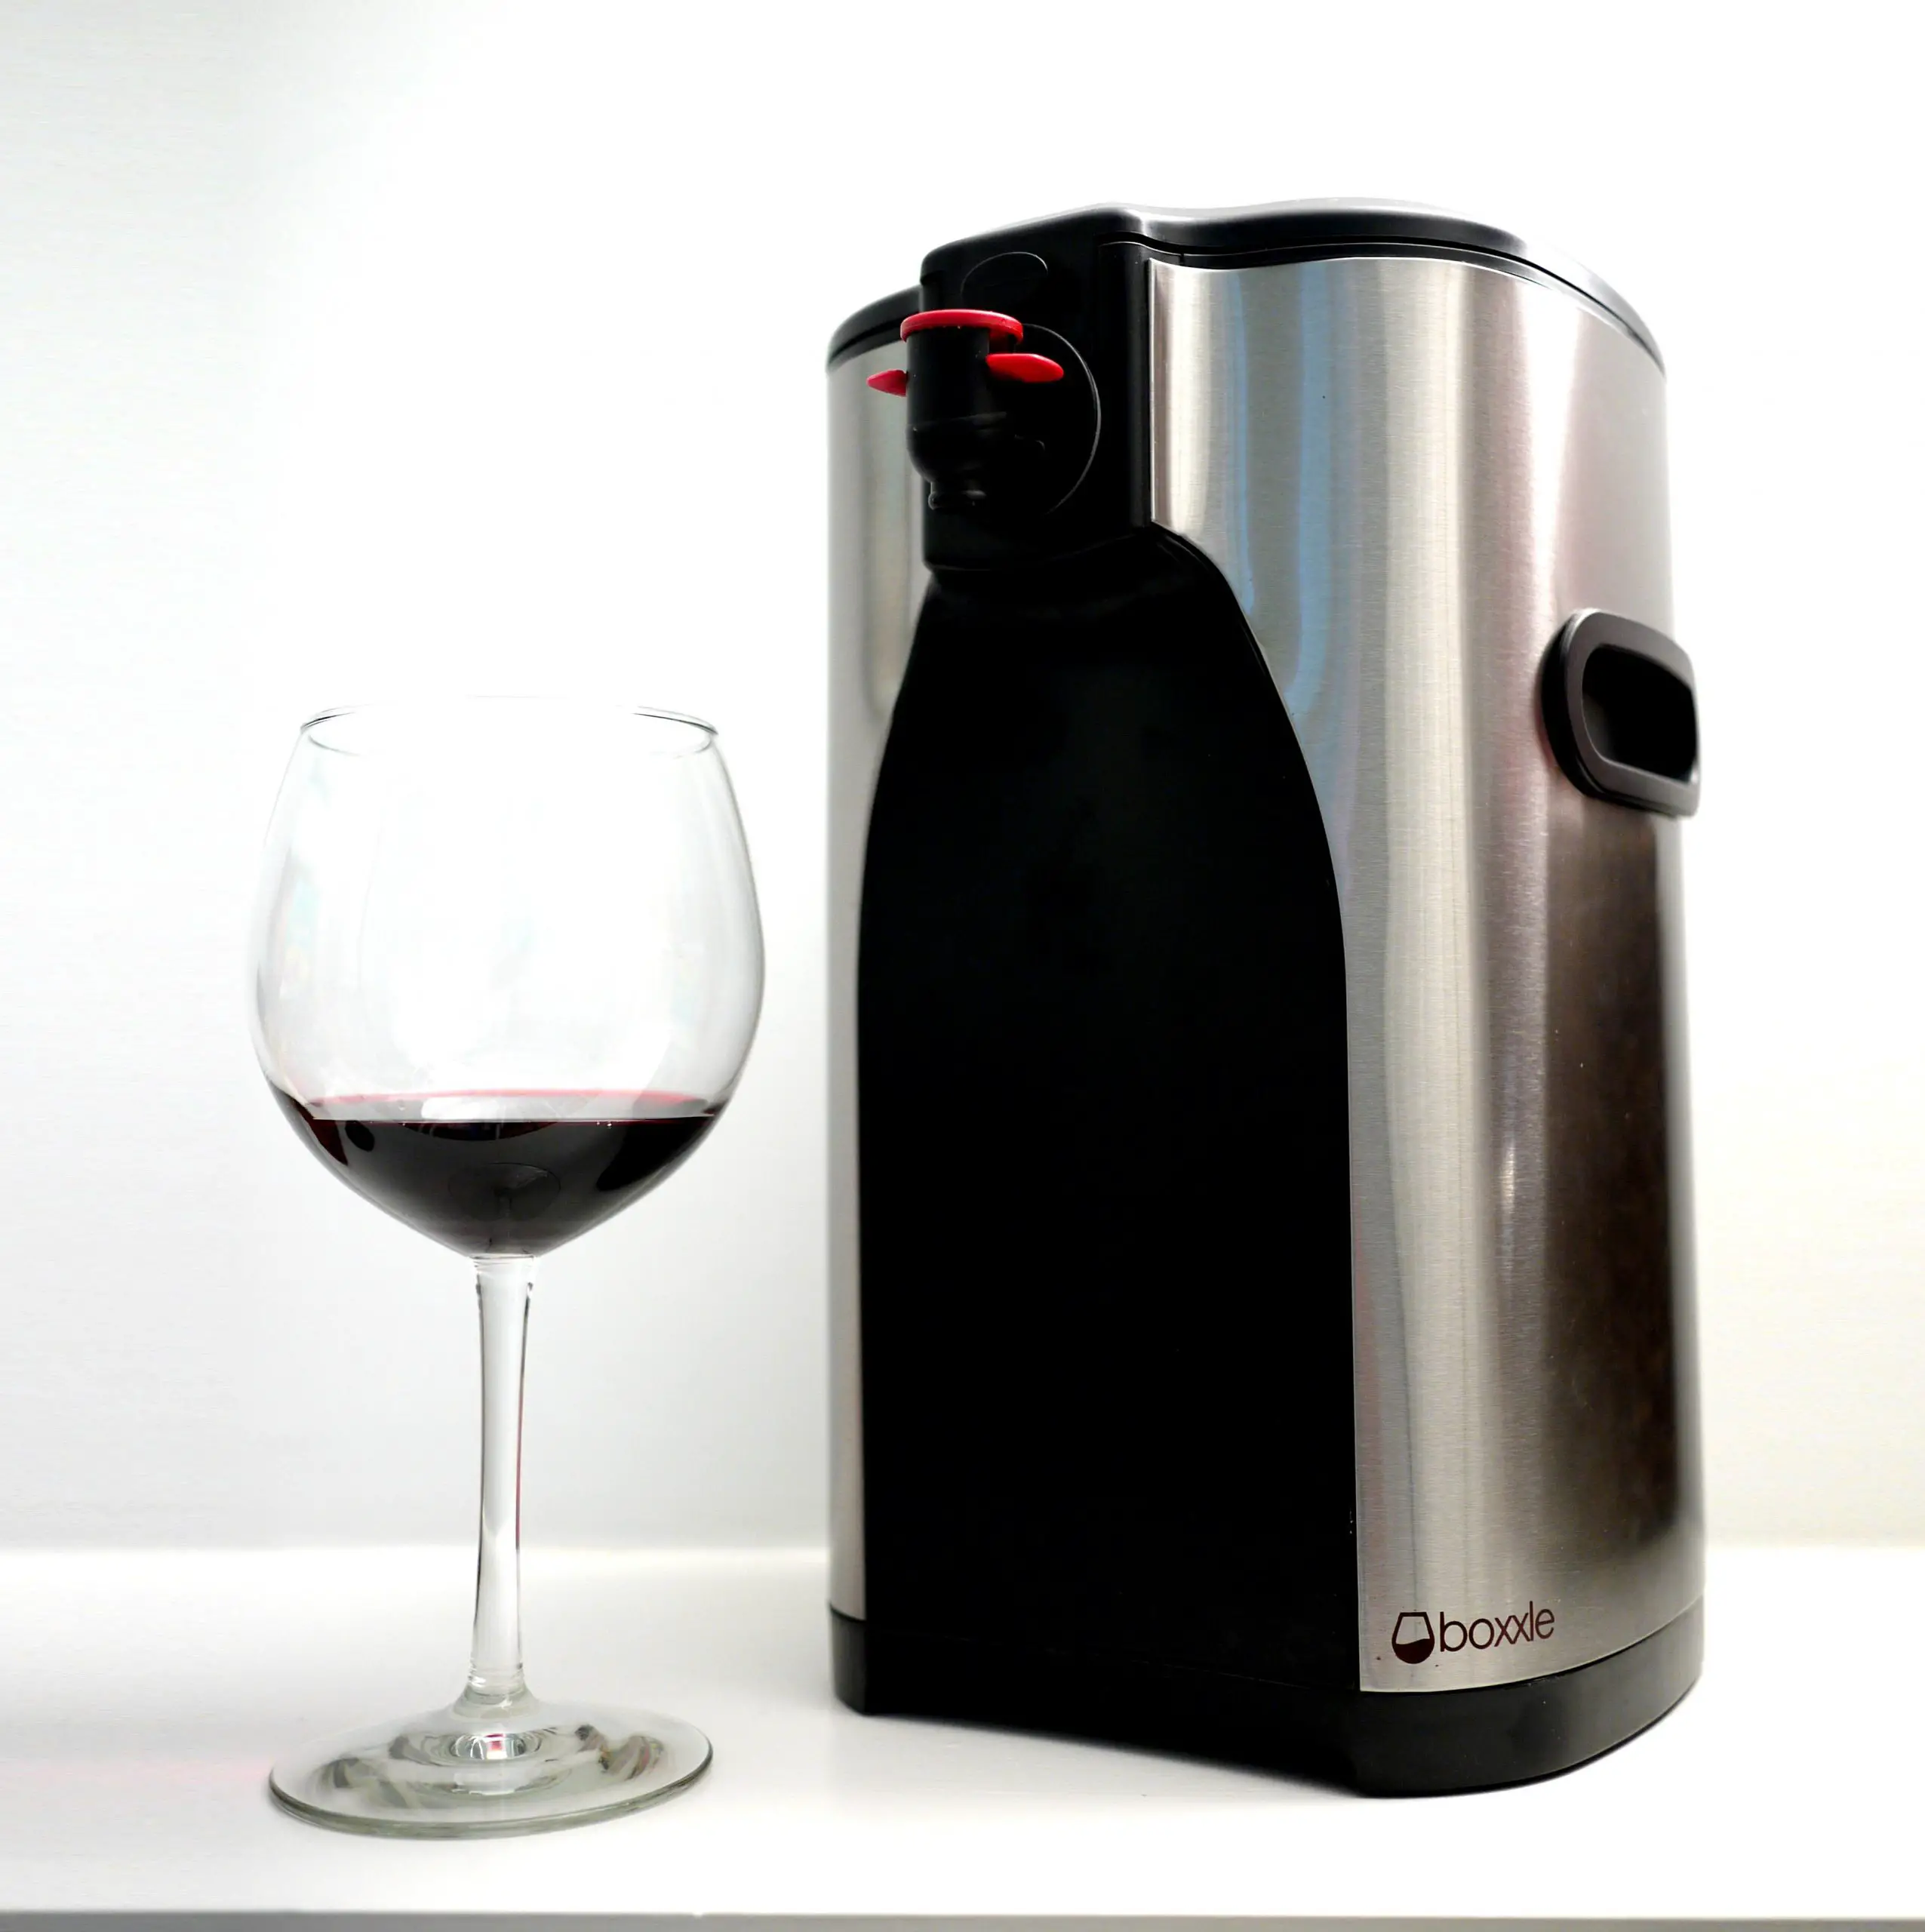 Amazon.com: Boxxle Box Wine Dispenser, 3